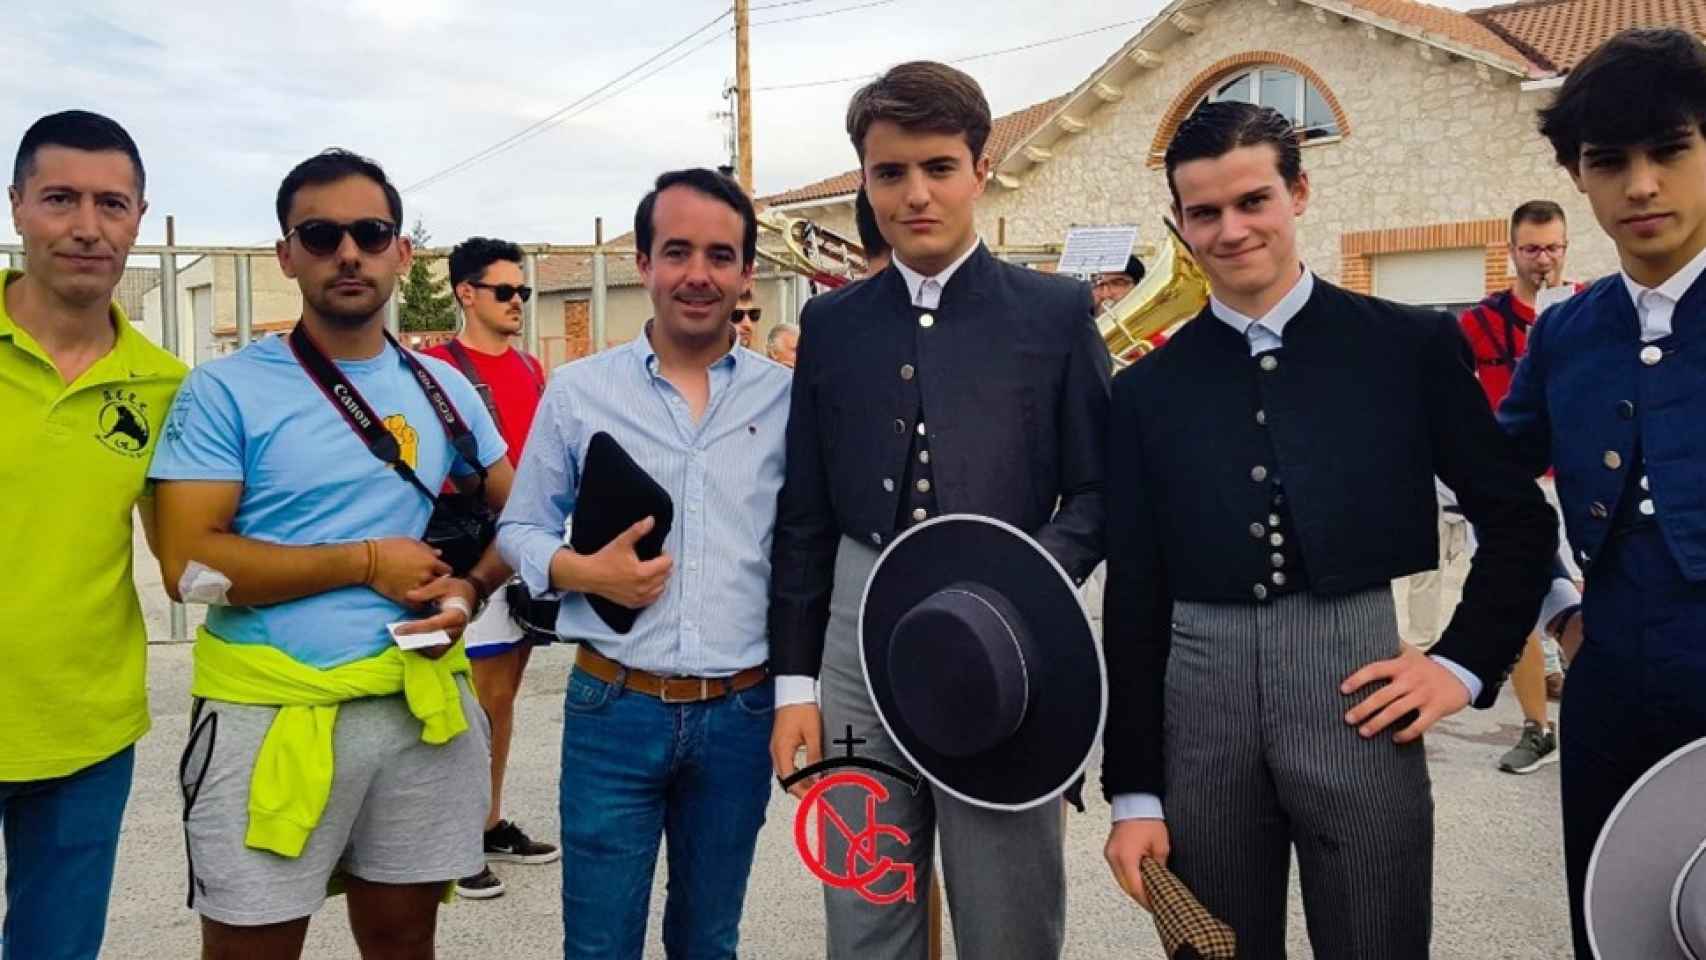 Los novilleros actuantes junto al alcalde, Iván Velasco, y dos de los componentes de La Empalizada, Raúl y Diego. (Natalia Calvo)